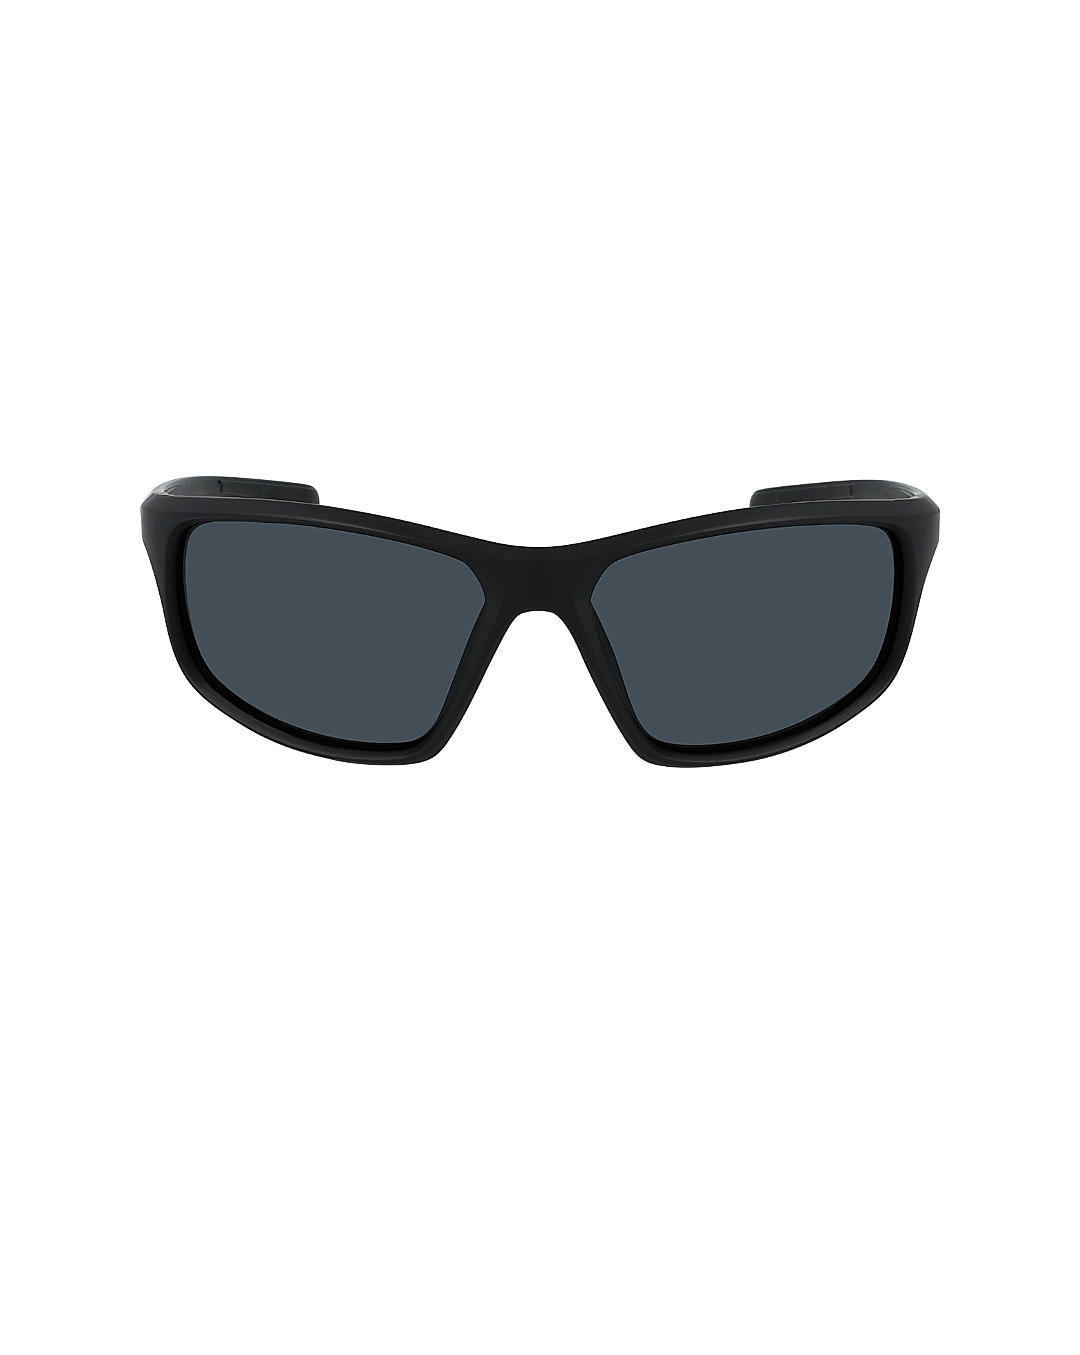 Buy Columbia Black Slick Creek Sunglasses Online at Columbia